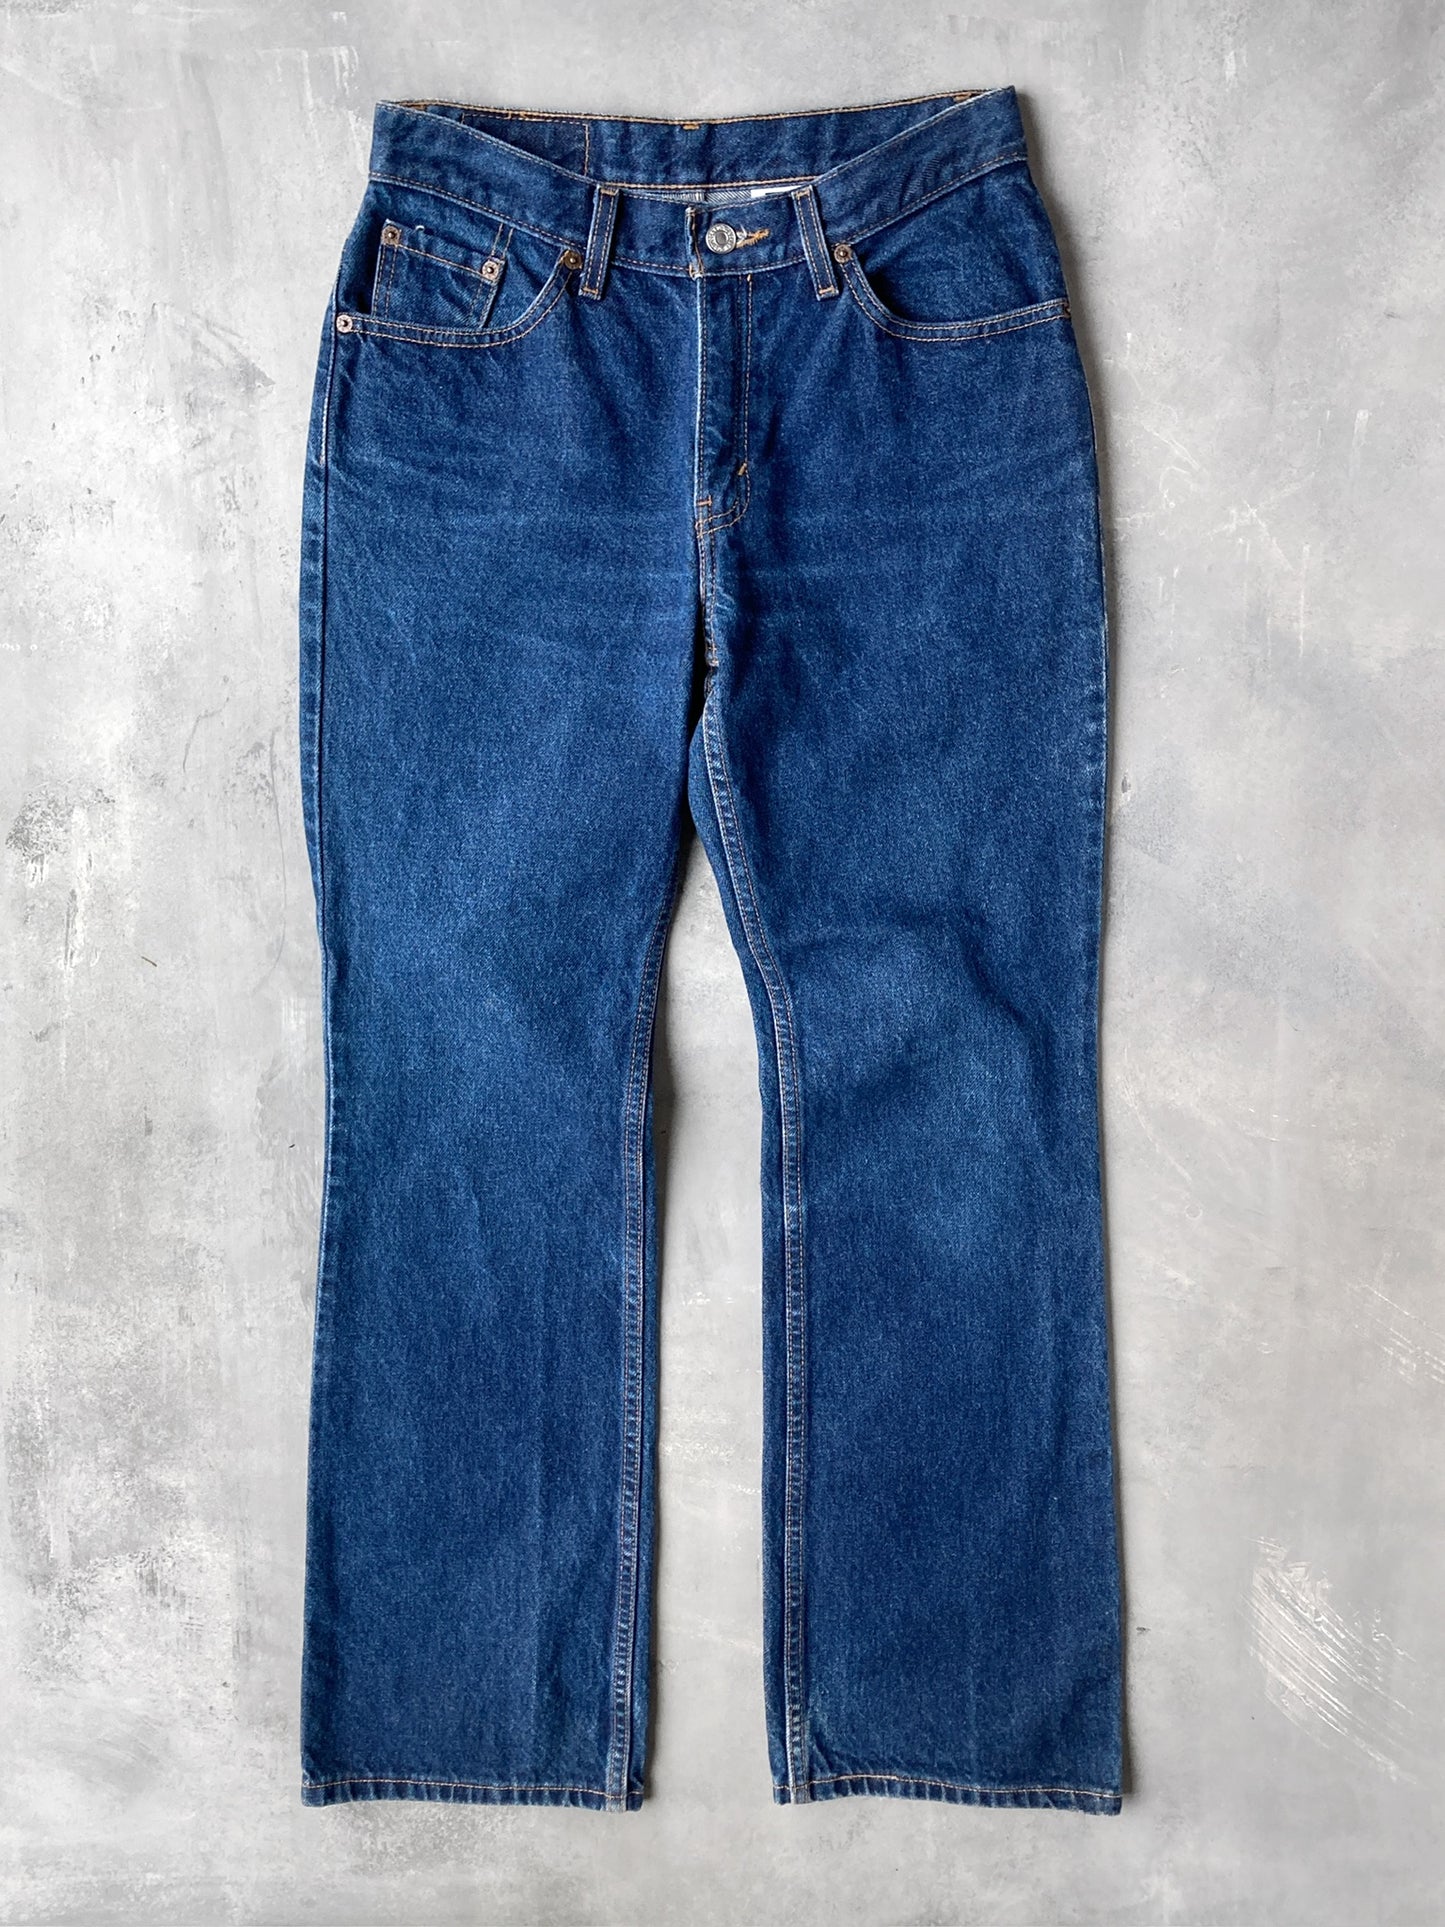 Levi's 517 Boot Cut Jeans '01 - 4